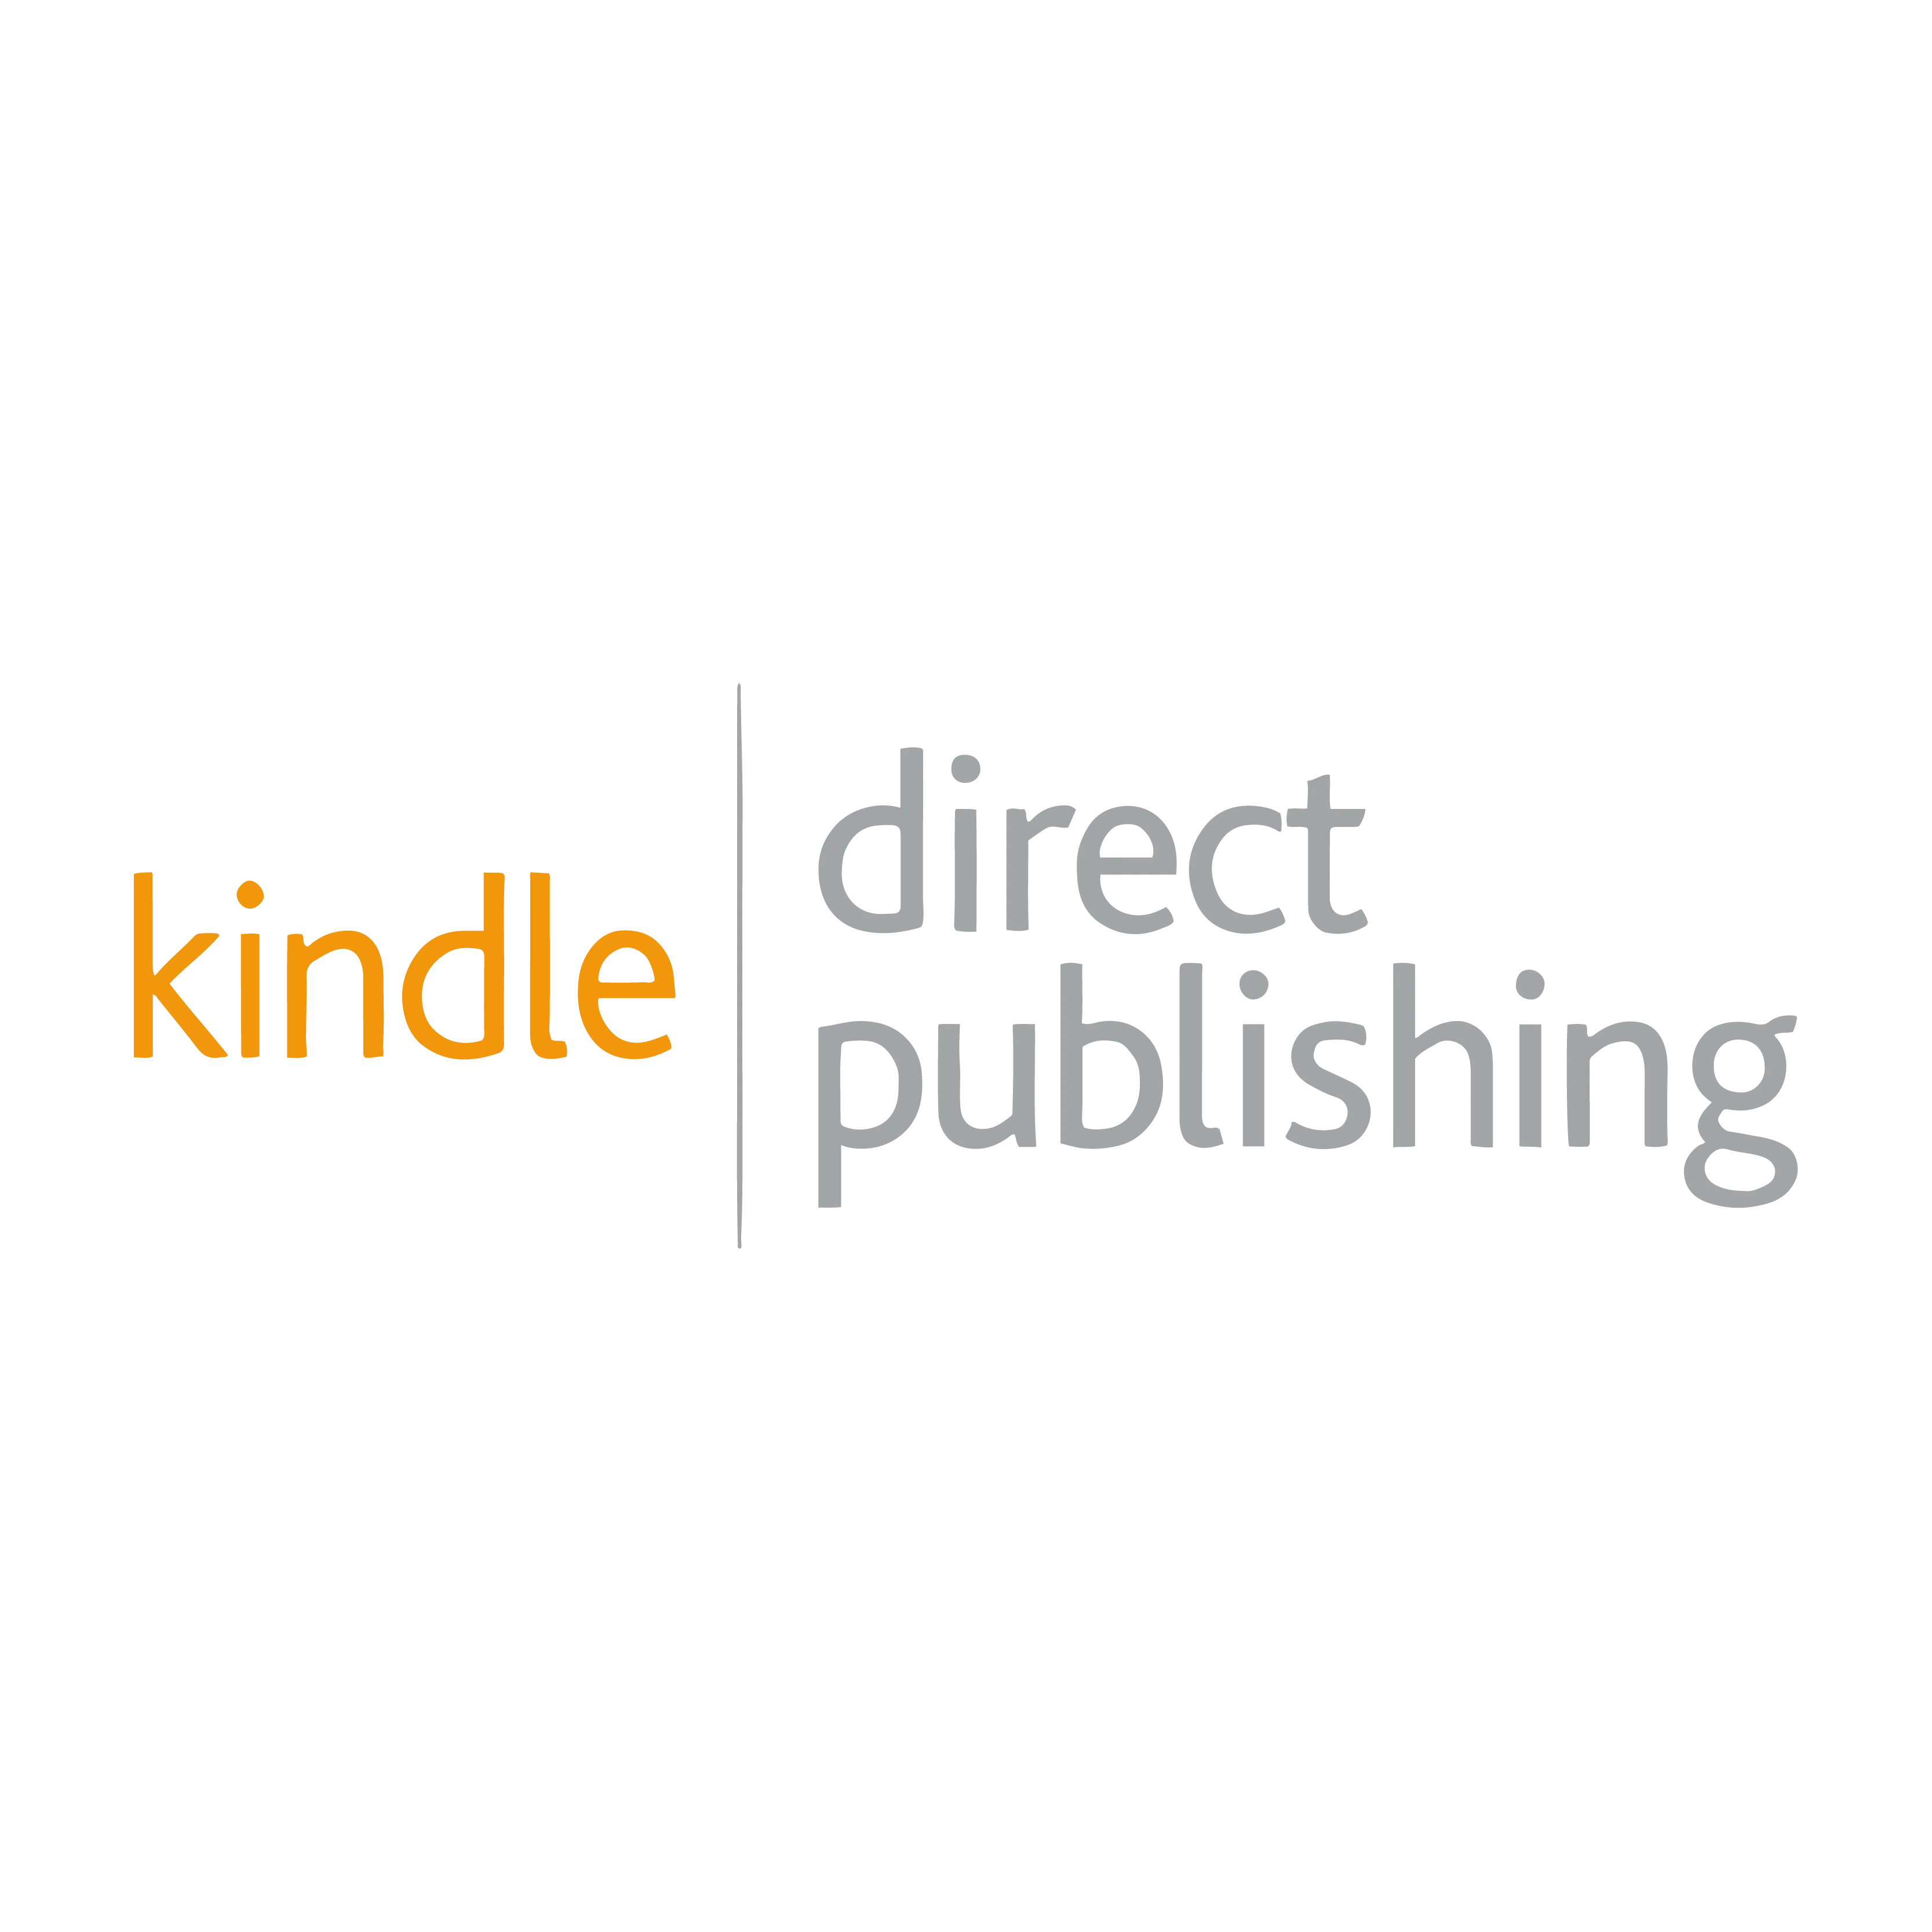 kindle-direct-publishing